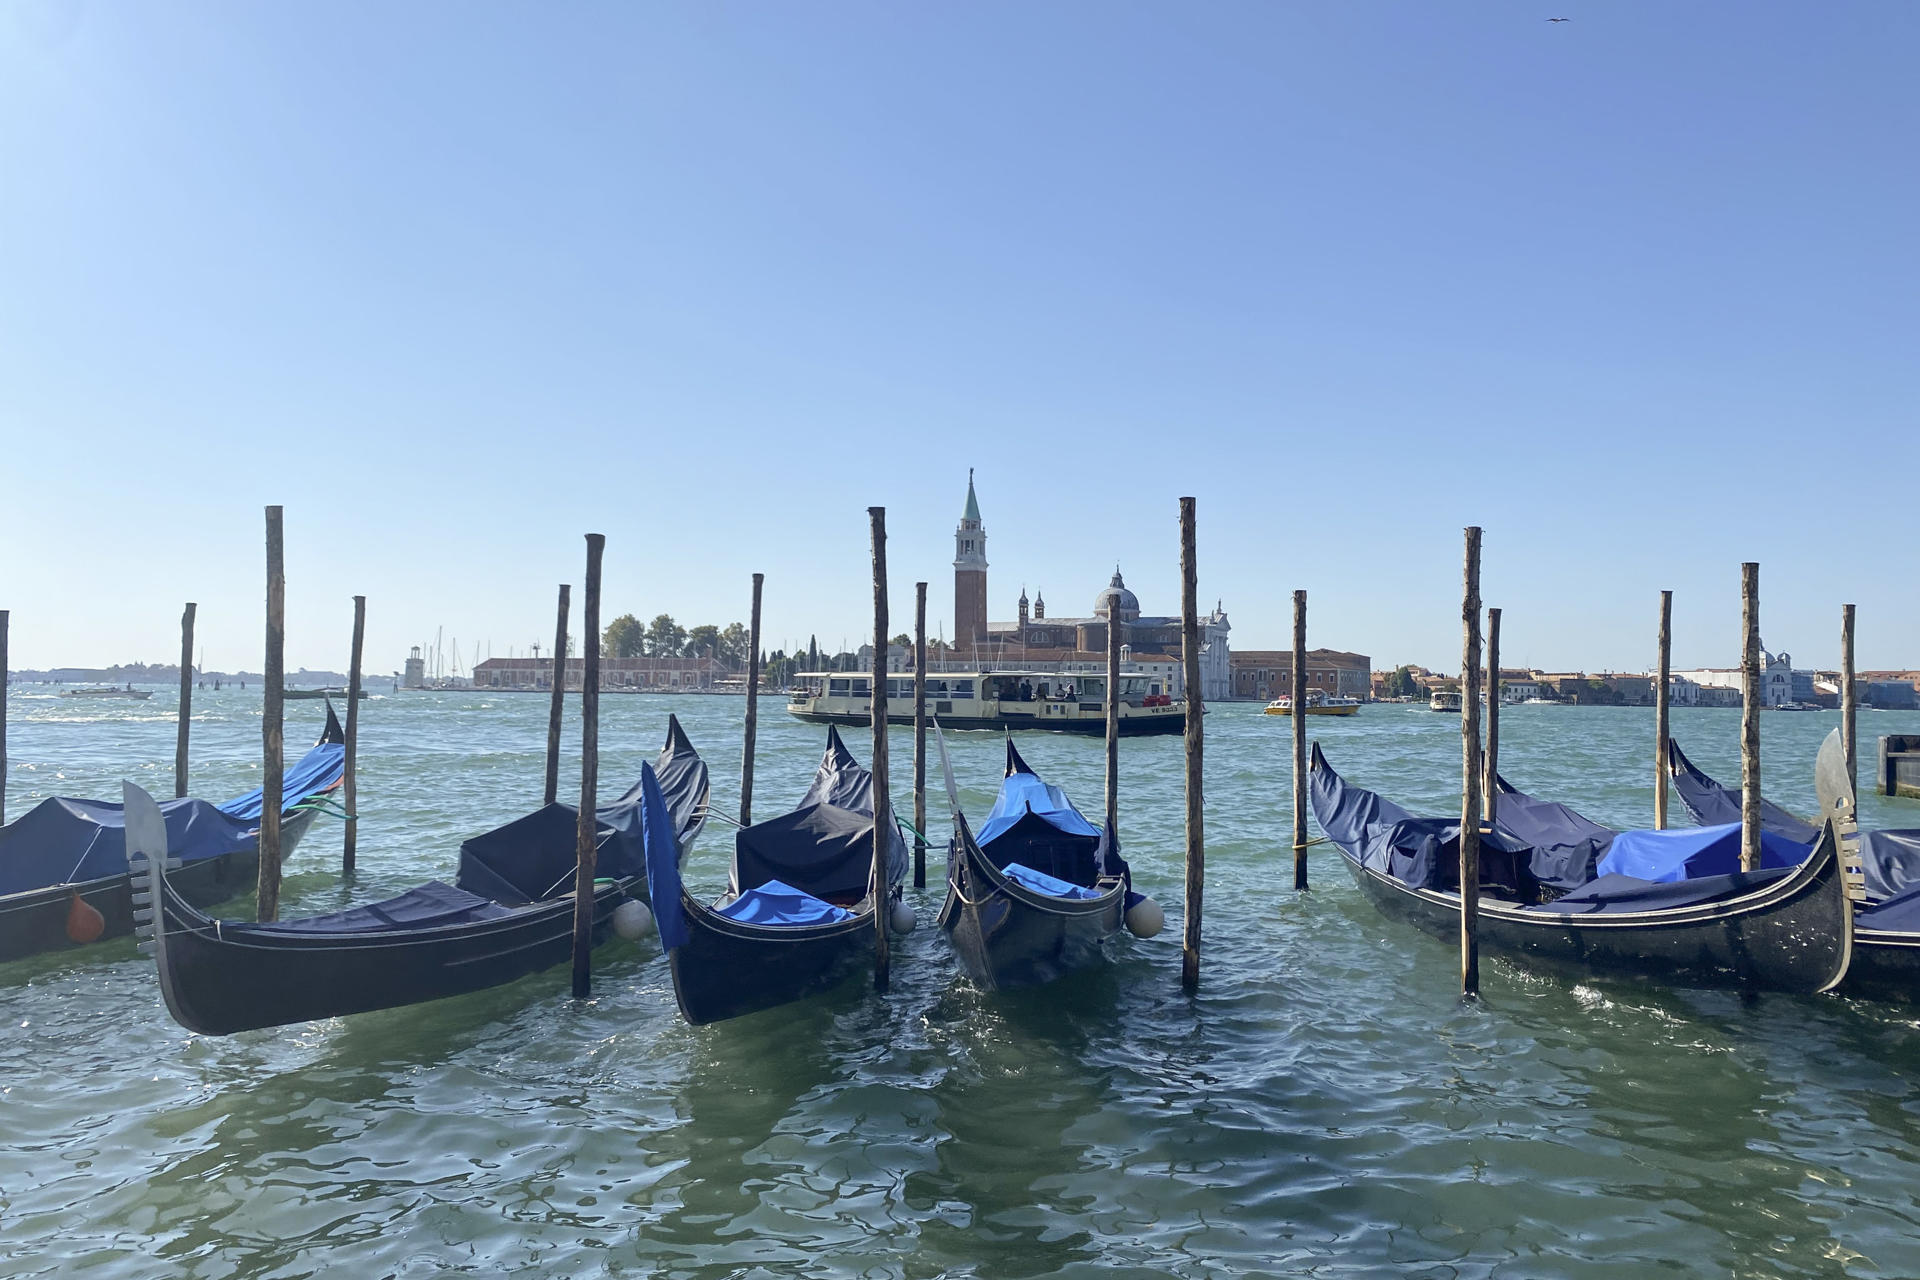 La no inclusión de Venecia como Patrimonio en riesgo una "gran victoria", según alcalde